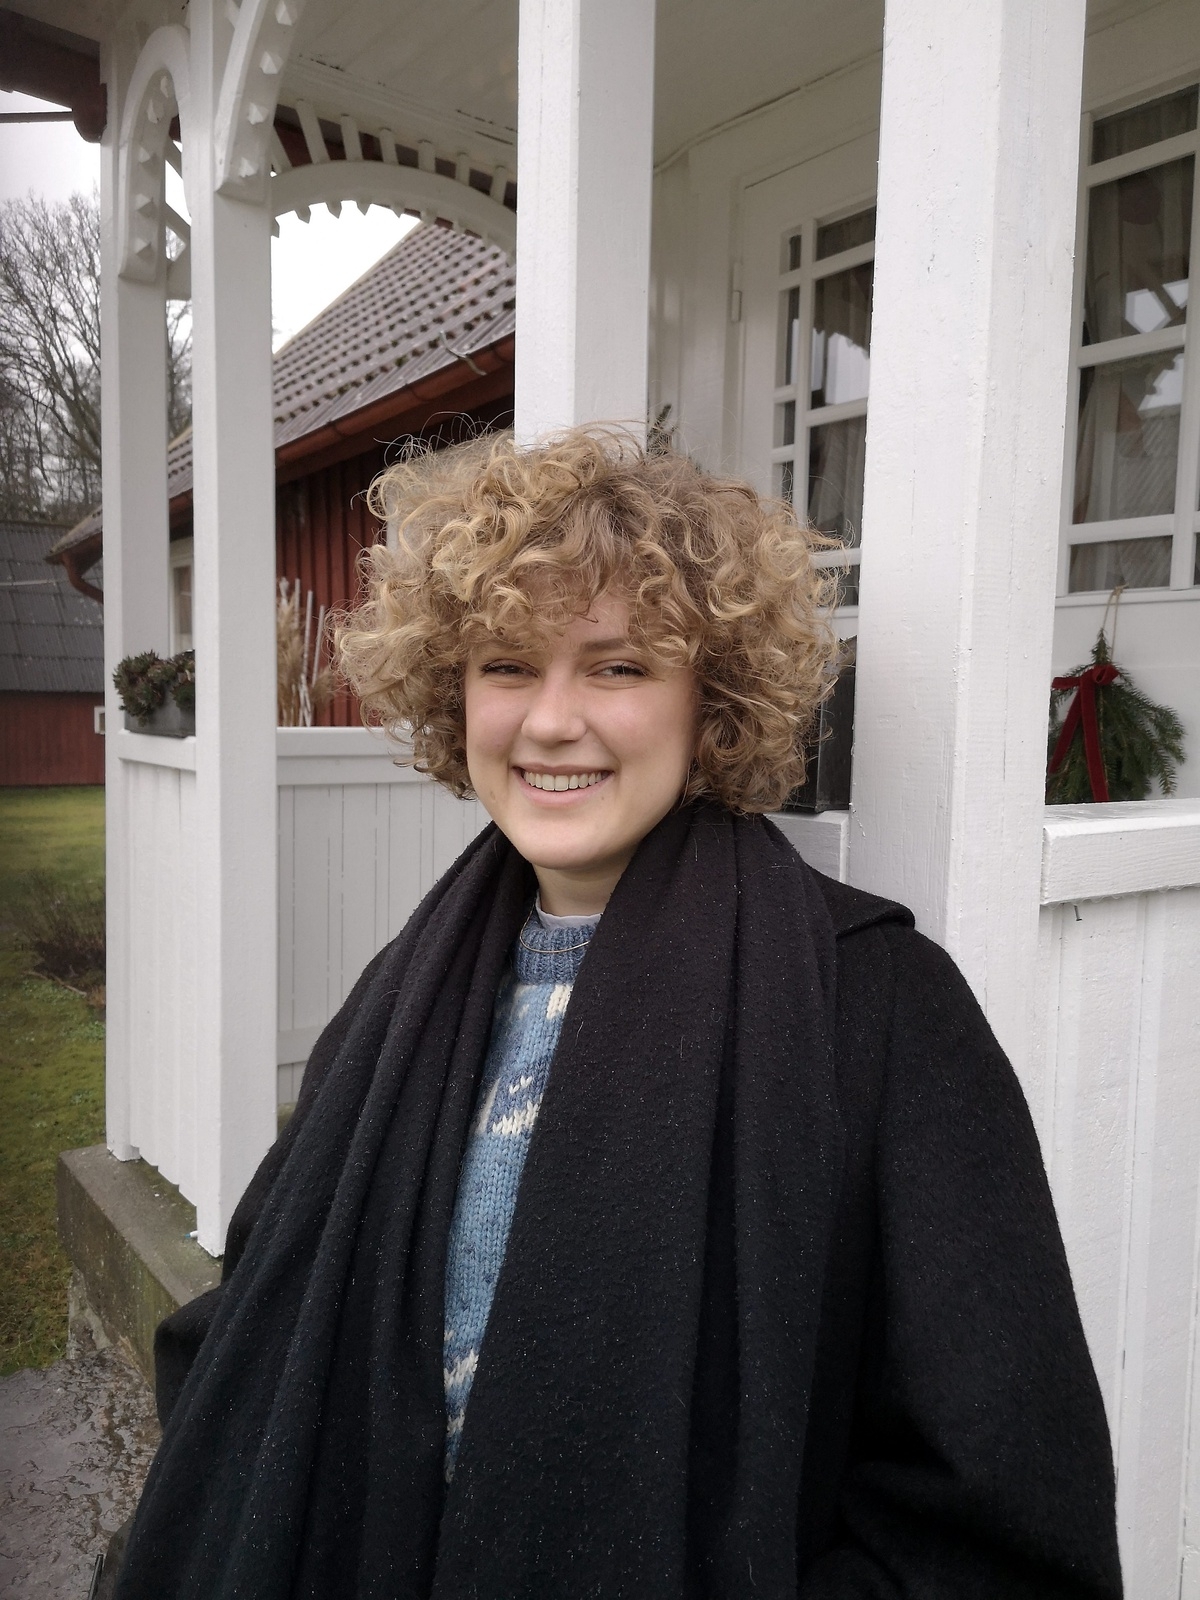 22-åriga Elin Gunnarsson lämnar Skåne för att jobba som volontär i den lilla staden Namur. 
Foto: Maja Ögren Andersson